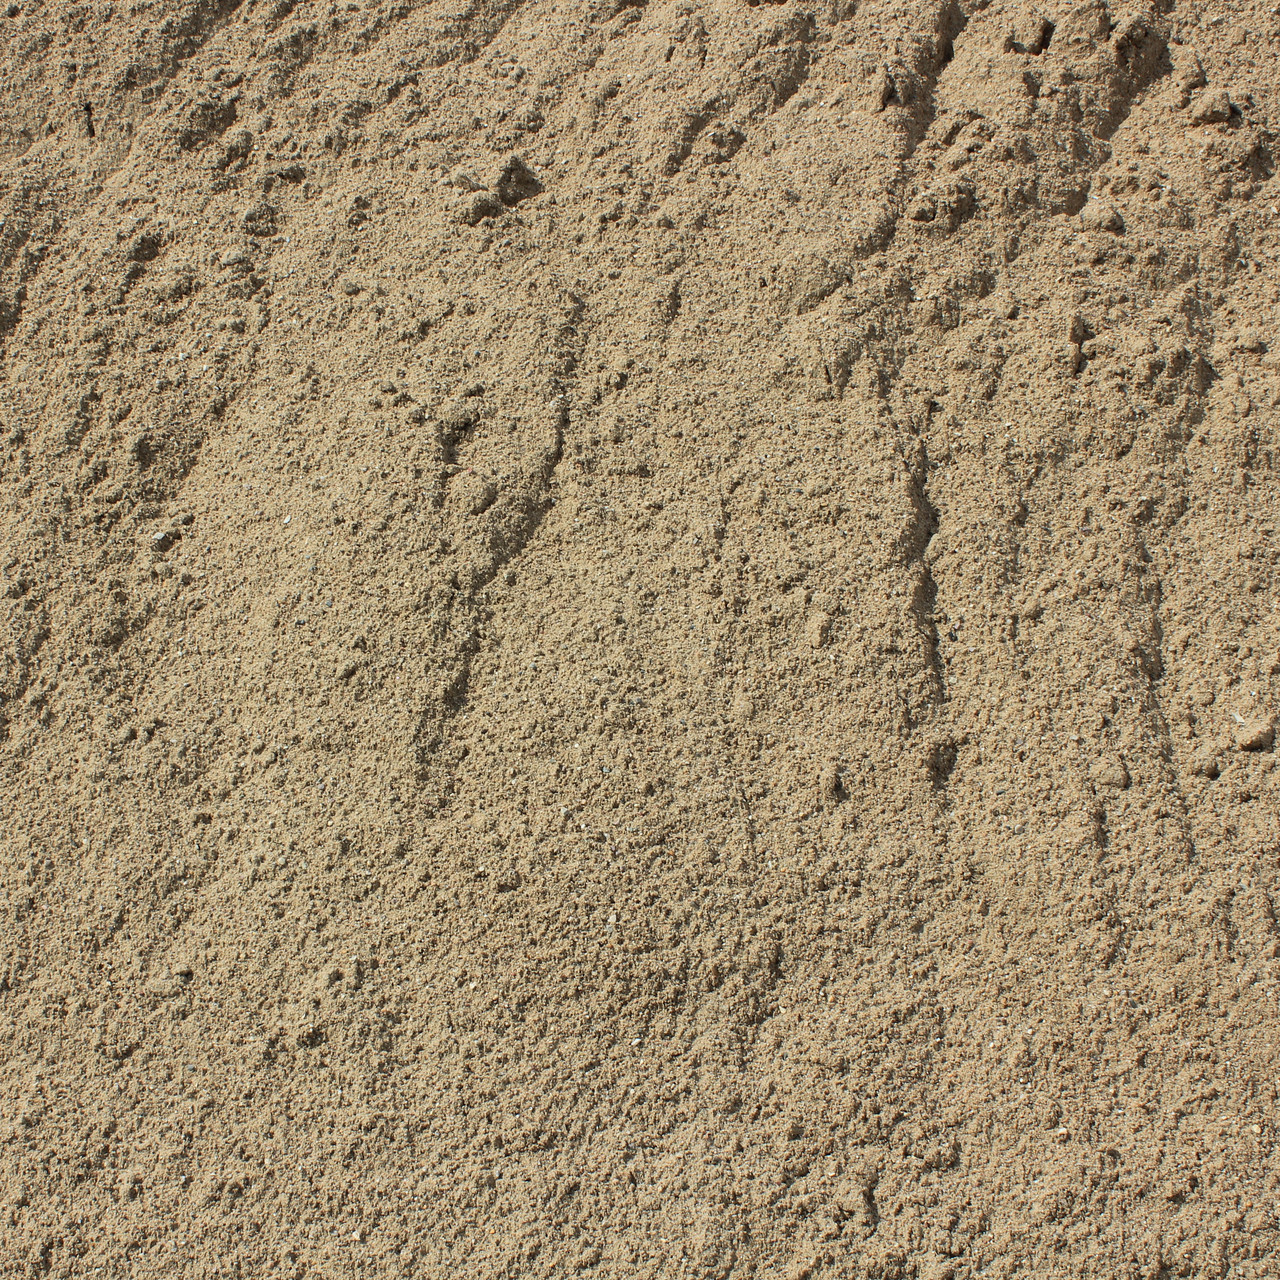 Сколько весит куб песка